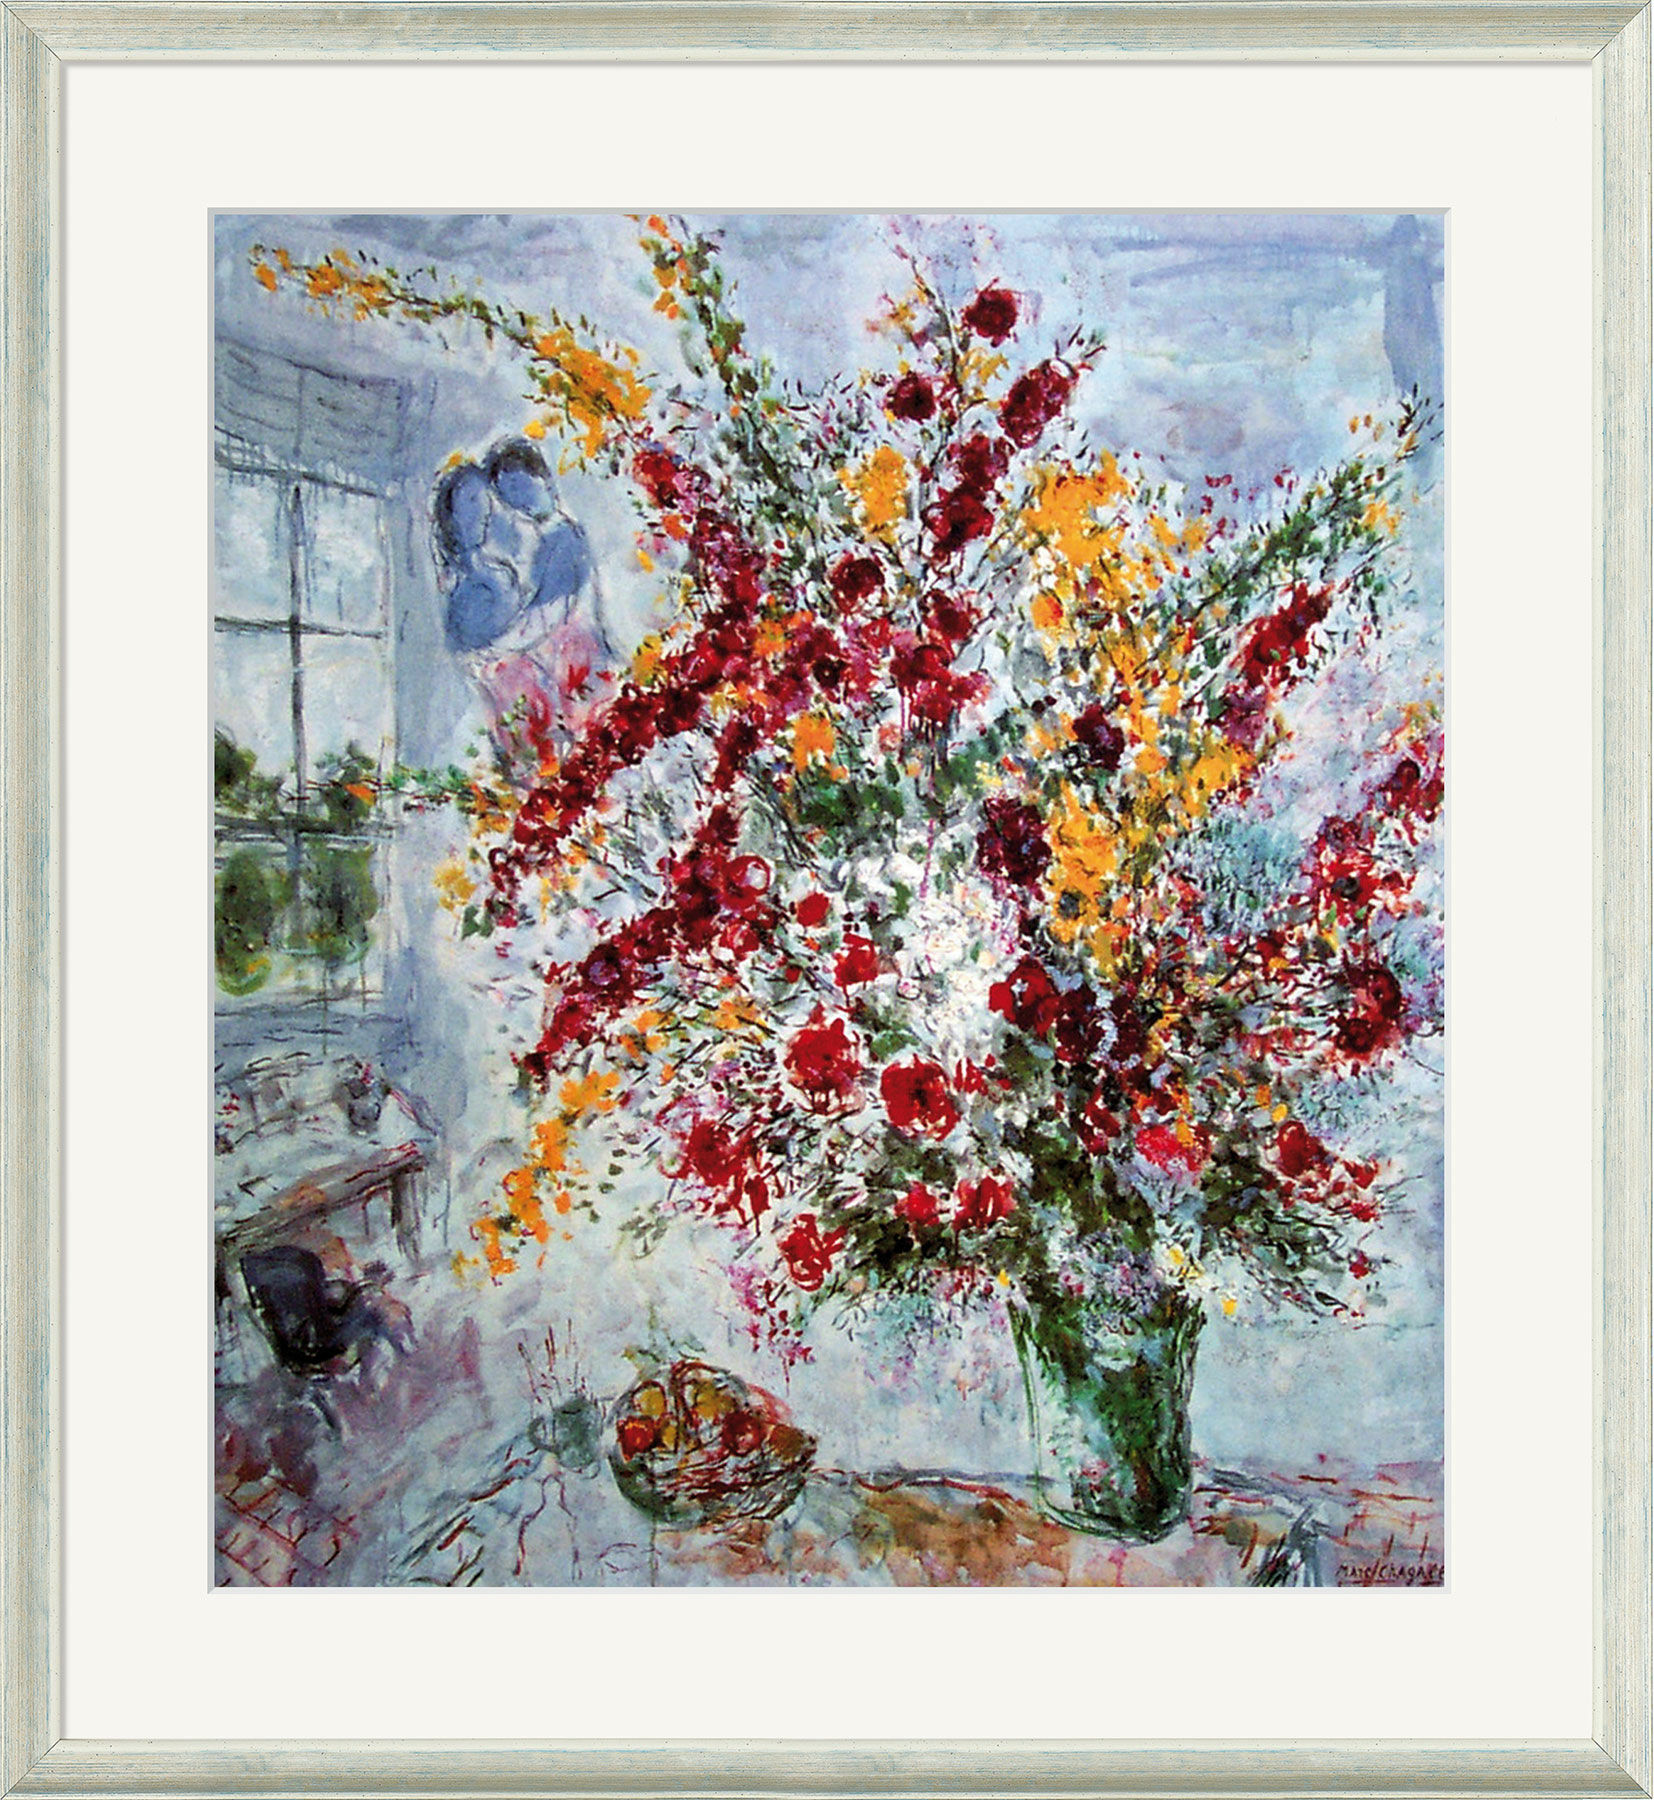 Billede "Bouquet at the Window" (1969), indrammet von Marc Chagall